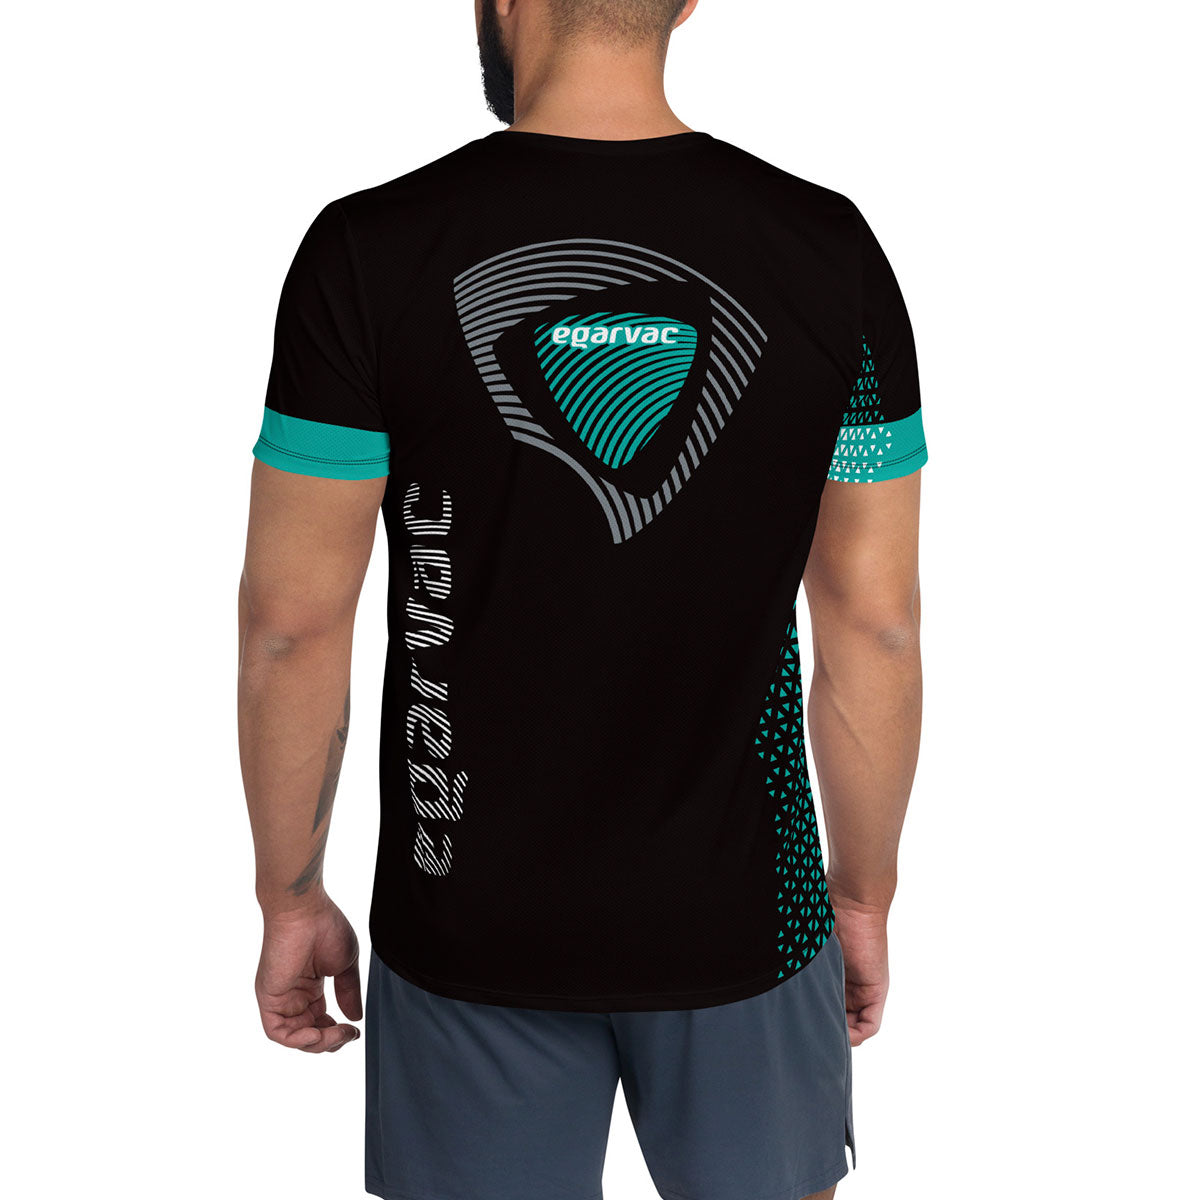 EGARVAC · Camiseta deportiva m/corta·Hombre · Premium·Full Print-299x1ipi